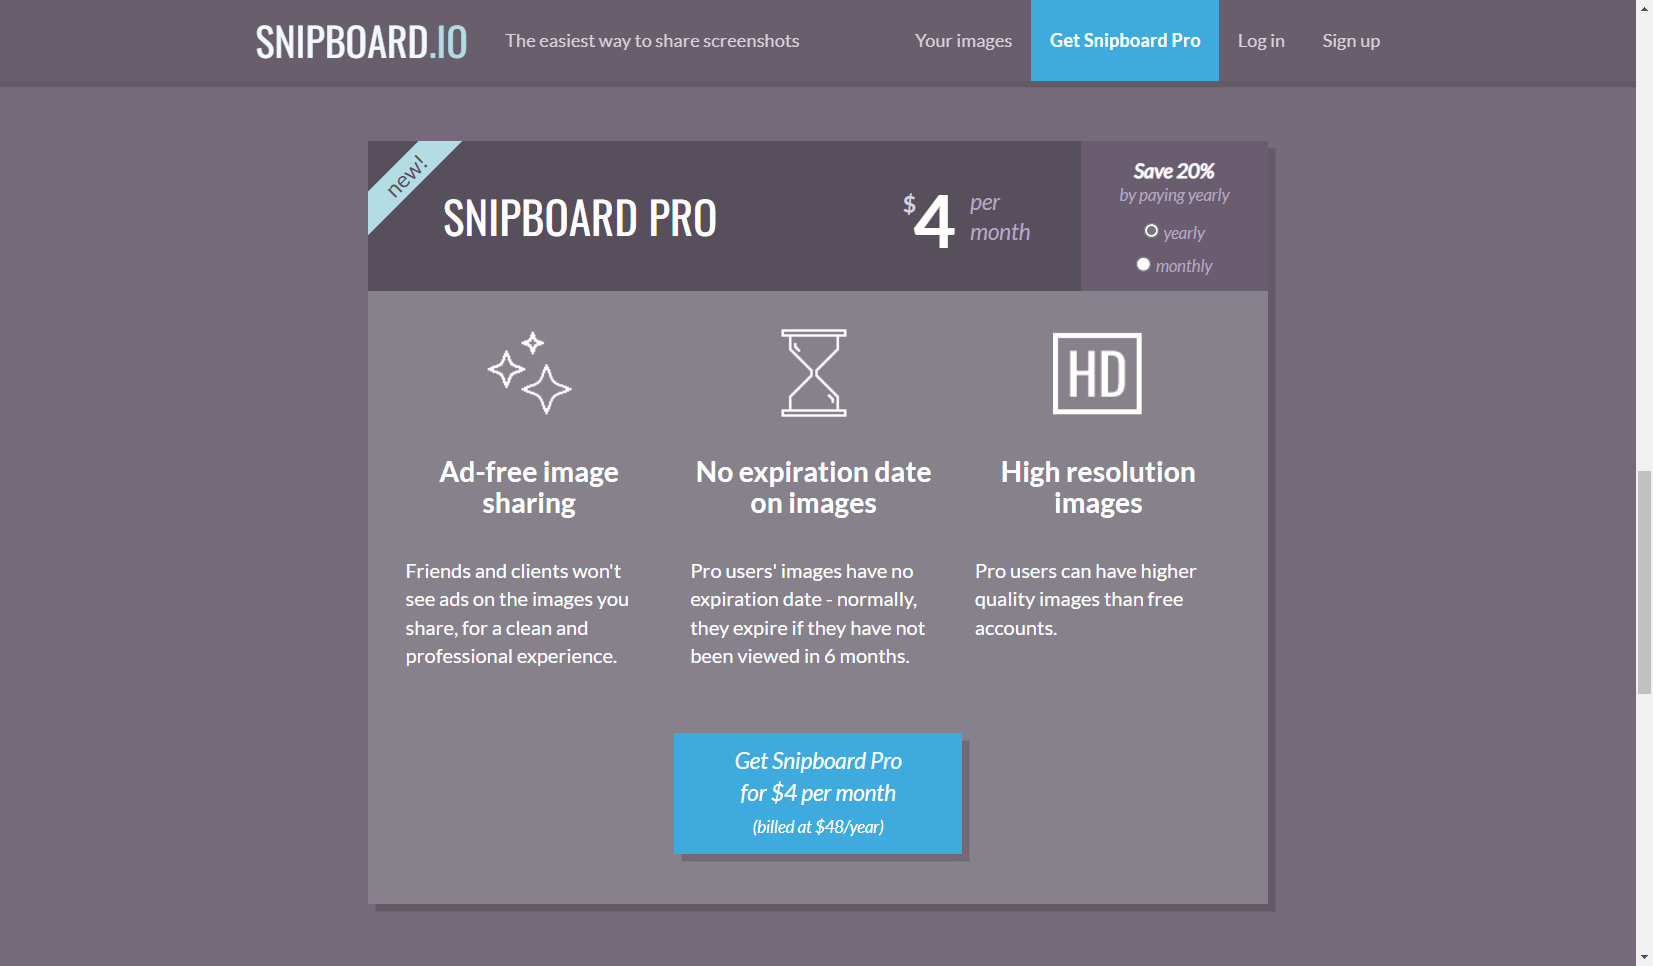 Snipboard Pro 每月 $4 美元提供無廣告、無儲存時間限制以及高解析度圖片的功能